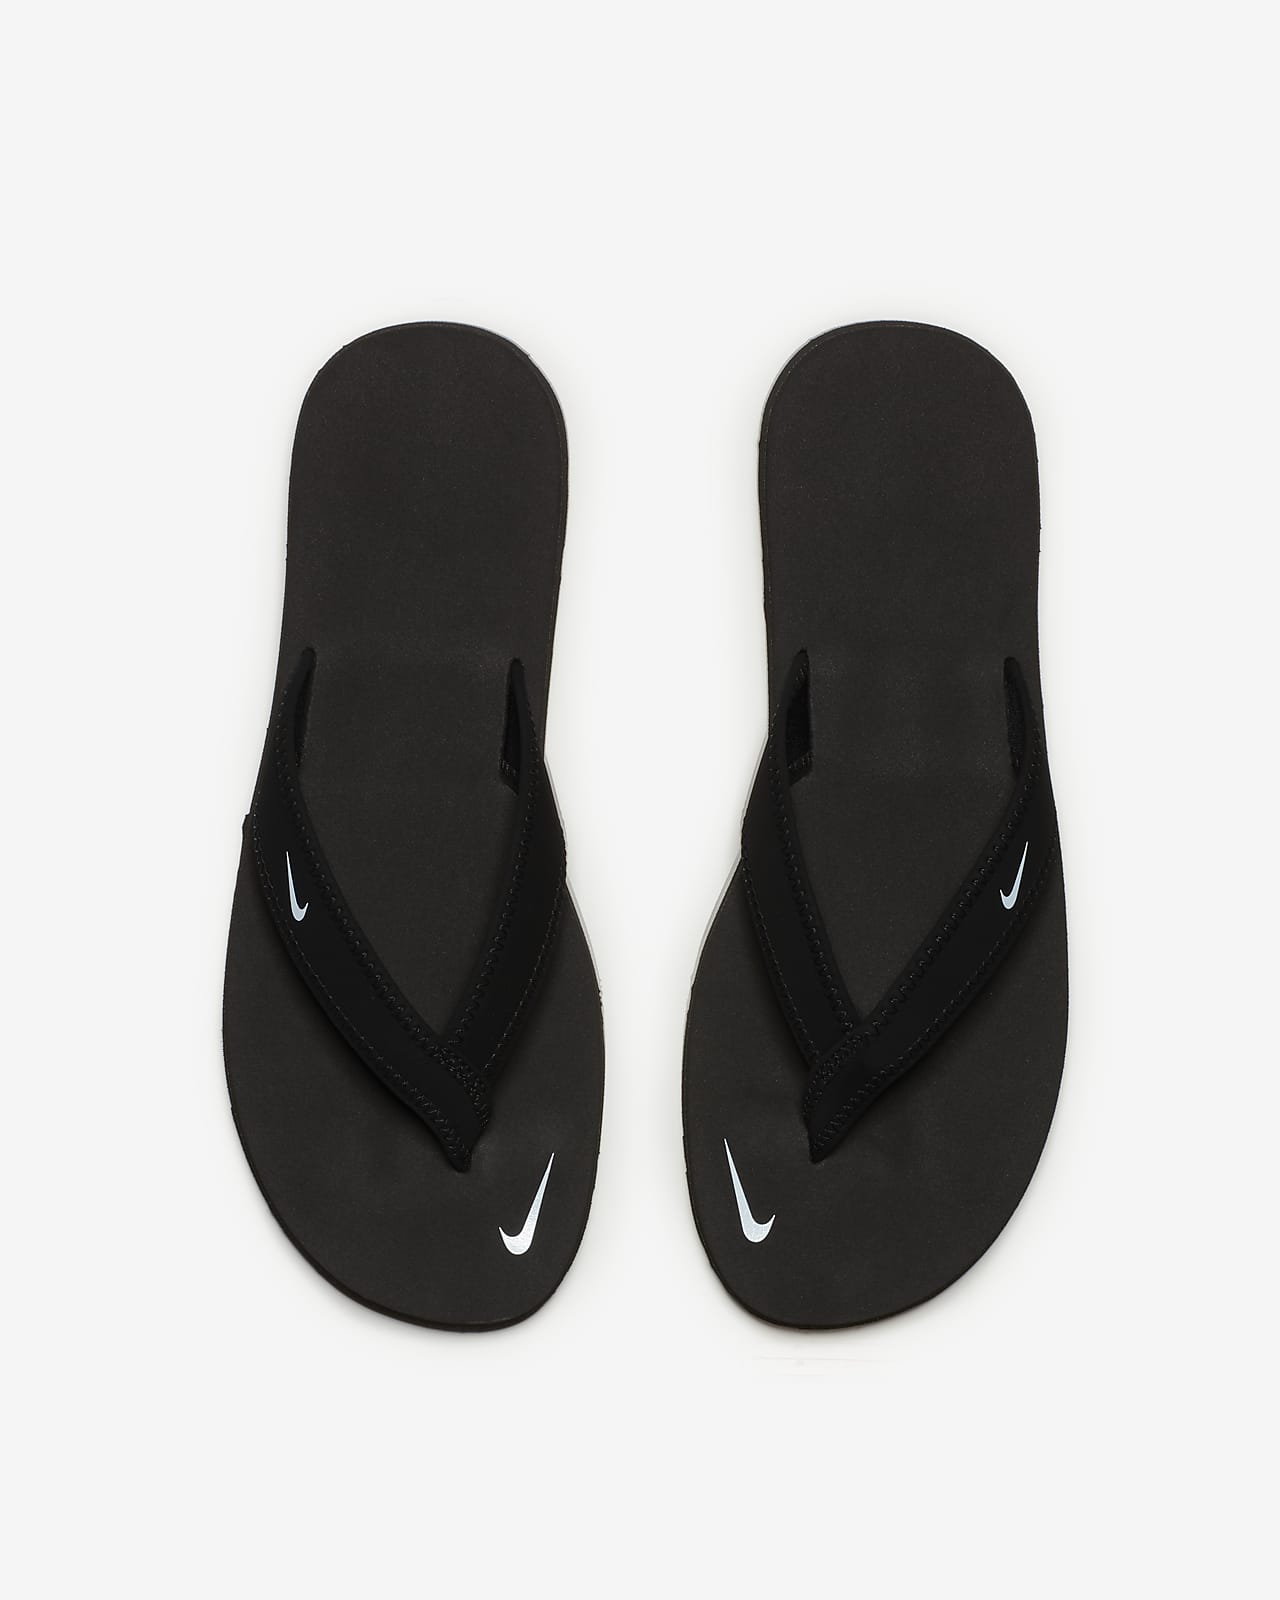 nike women's celso flip flop sandals